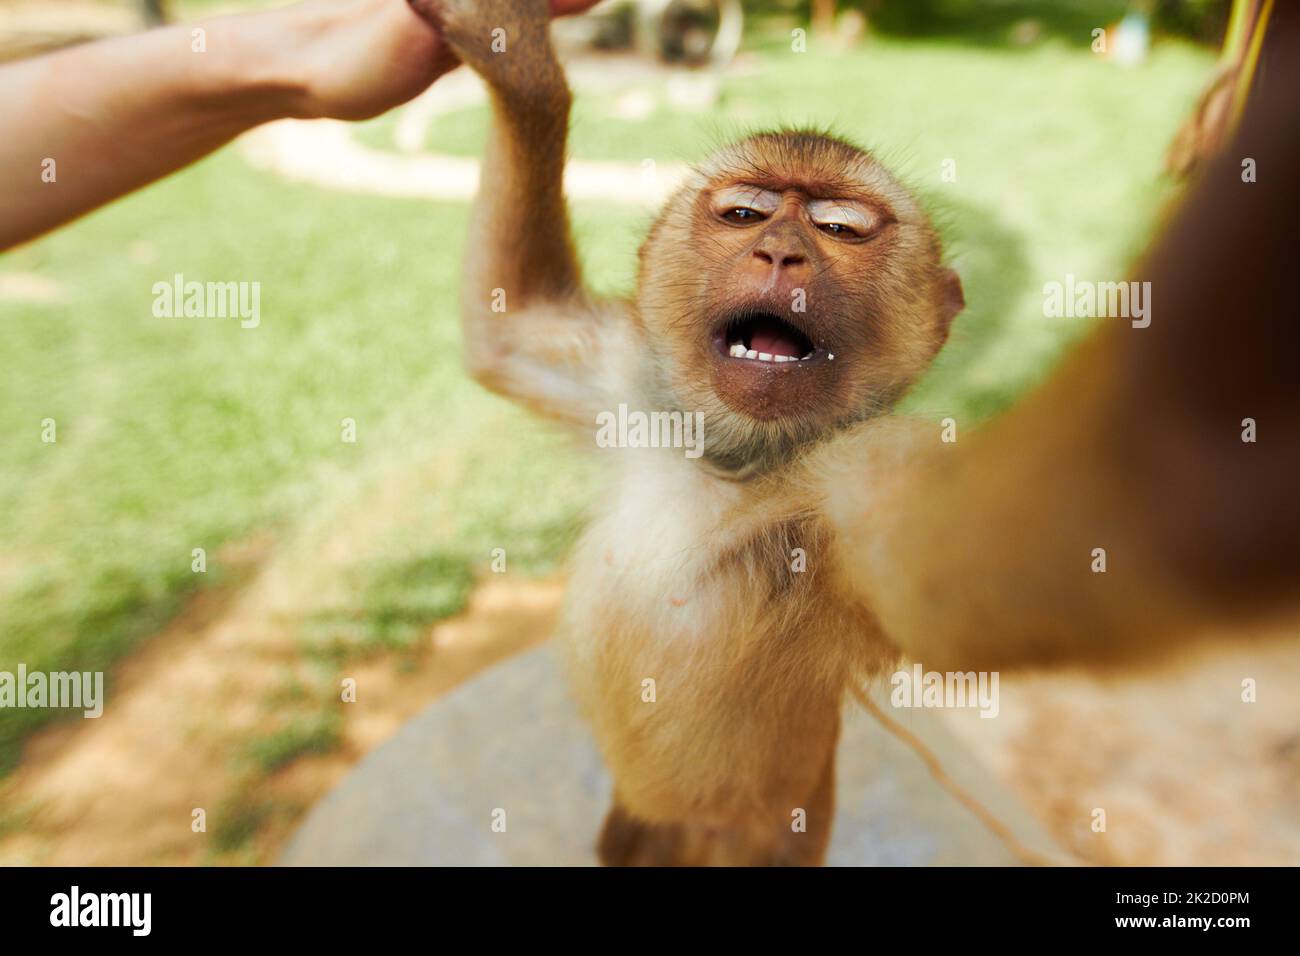 Singe thaïlandais atteignant. Un singe macaque en thaïlande et se dirige vers la caméra. Banque D'Images